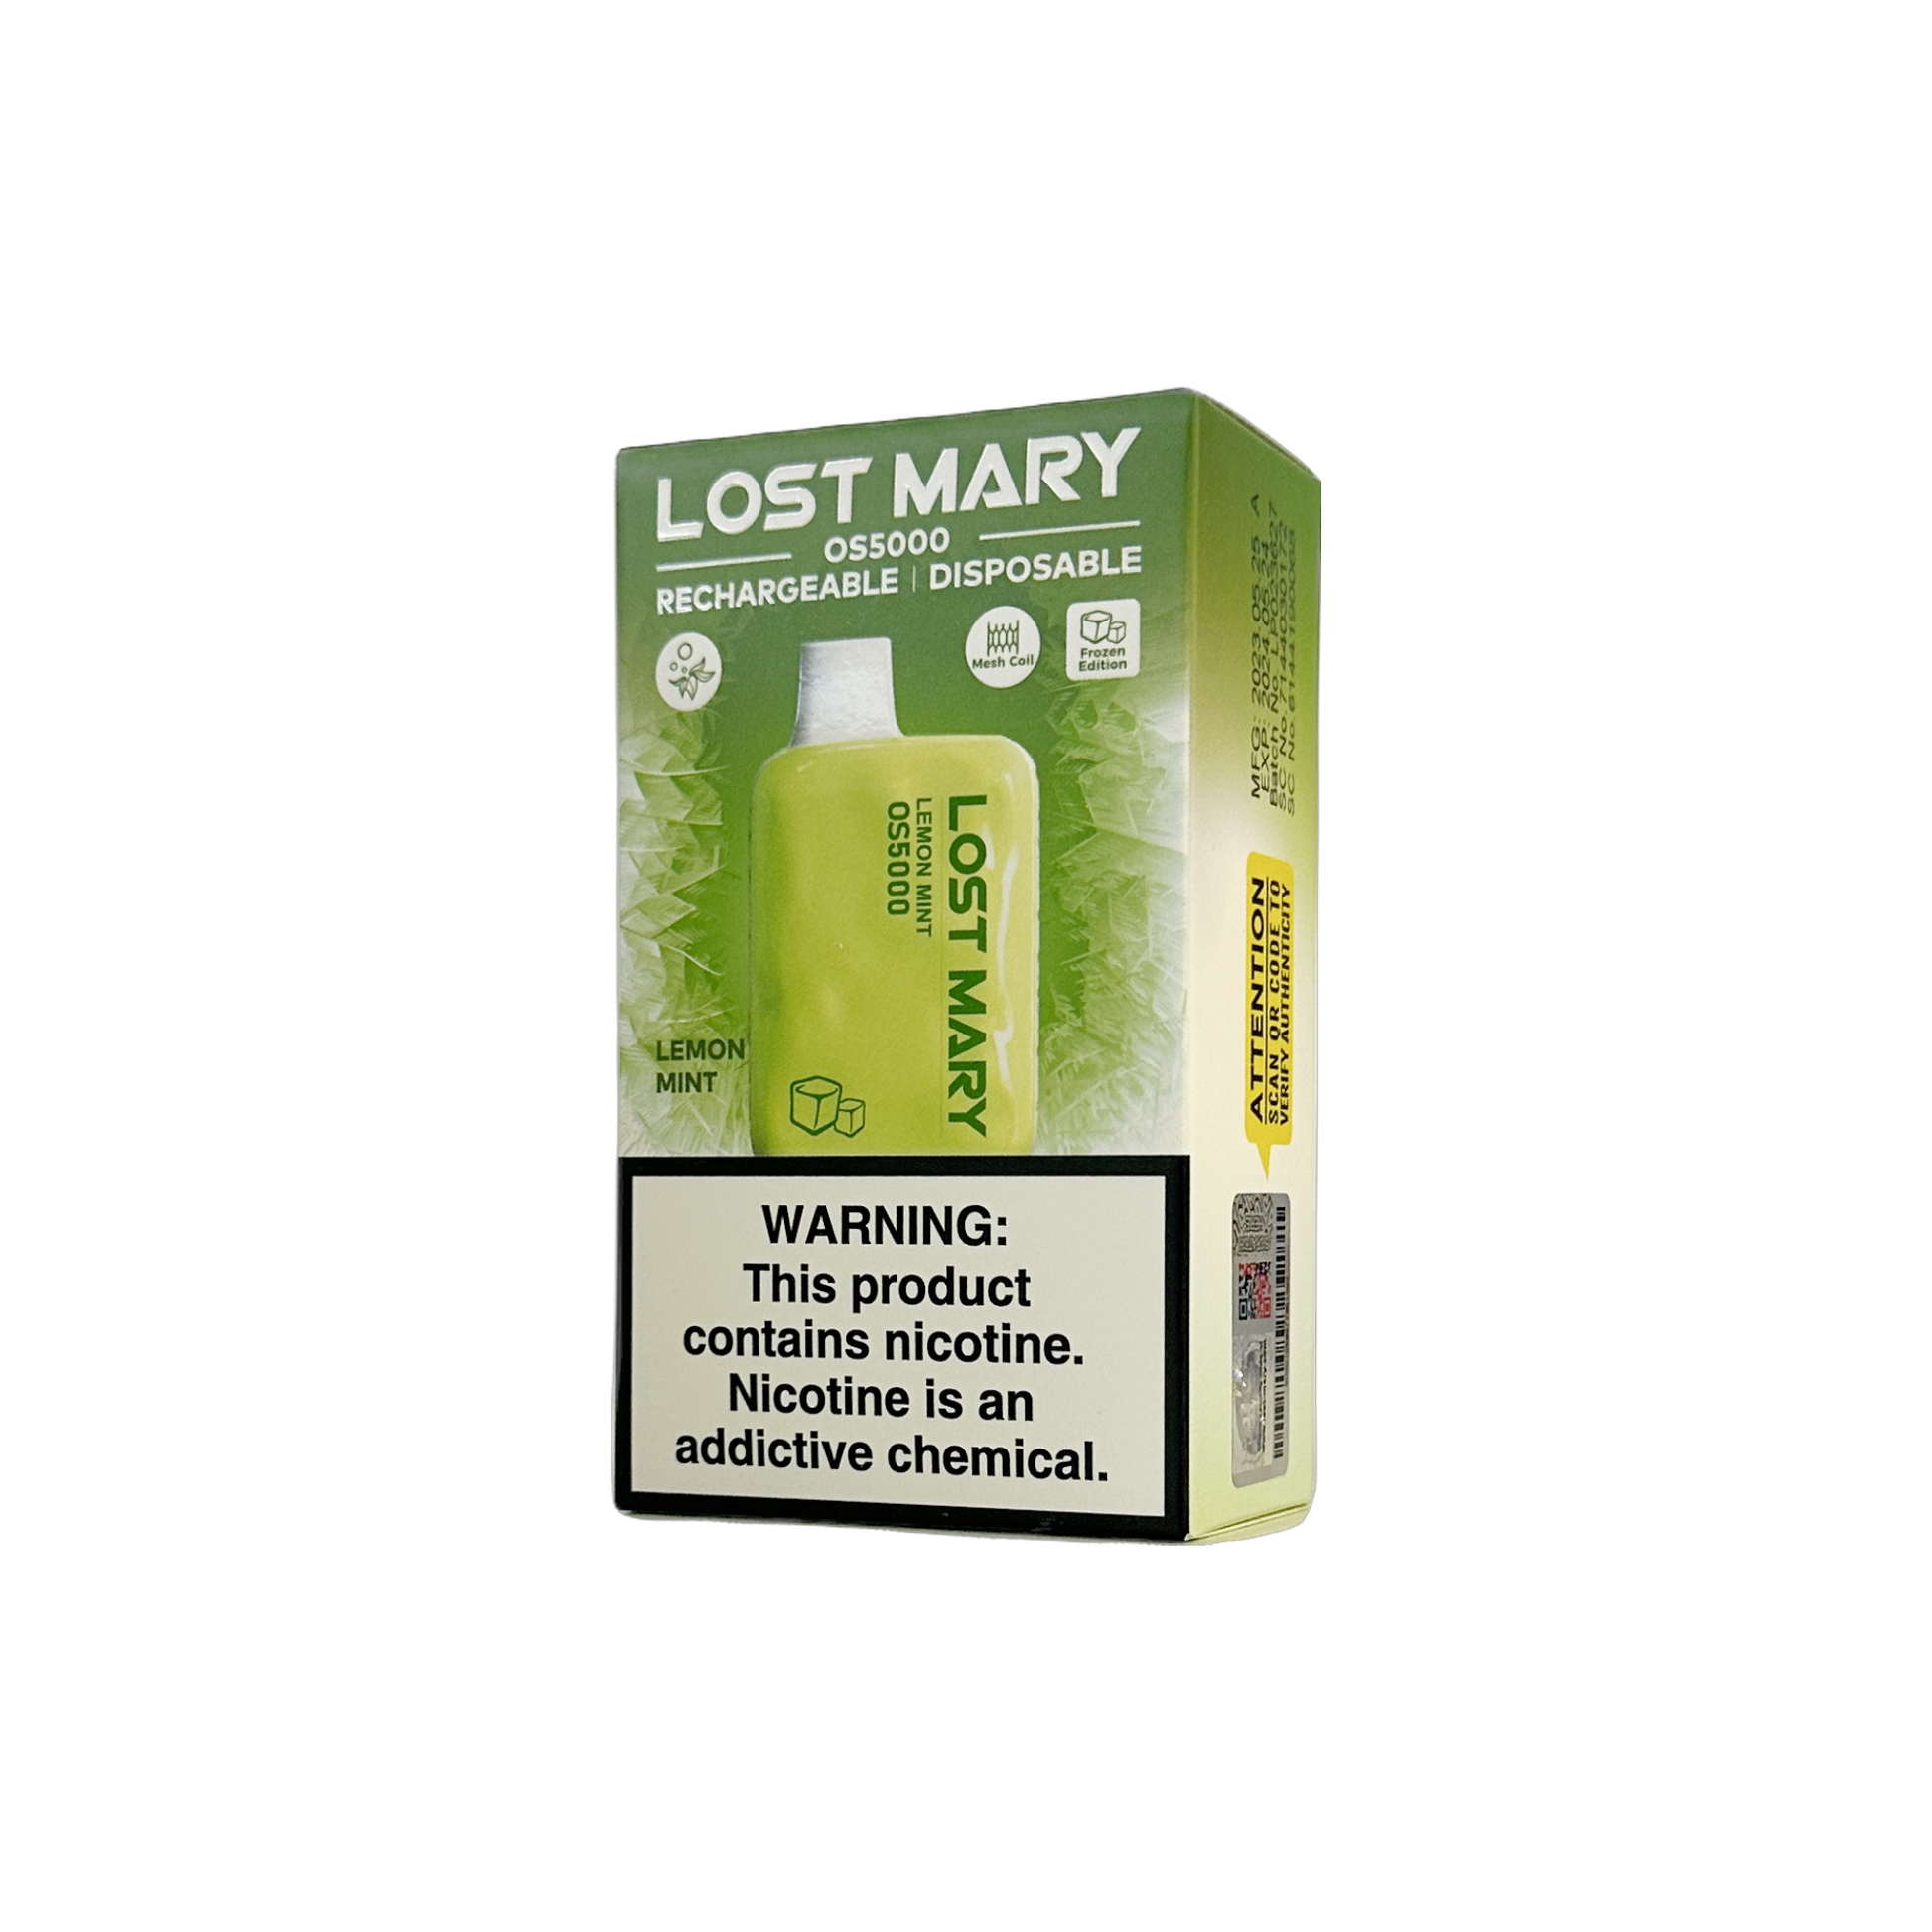 Lost Mary OS5000, Lost Mary OS5000 Vapes, Lost Mary OS5000 Disposable Vapes, Lost Mary OS5000 5000 Puffs, Lost Mary OS5000 Disposable Vape 5000 Puffs, Buy Lost Mary OS5000 Vape, Lemon Mint Lost Mary OS5000 Vape, Lost Mary OS5000 Lemon Mint Vape, Lost Mary OS5000 Vapeszn.